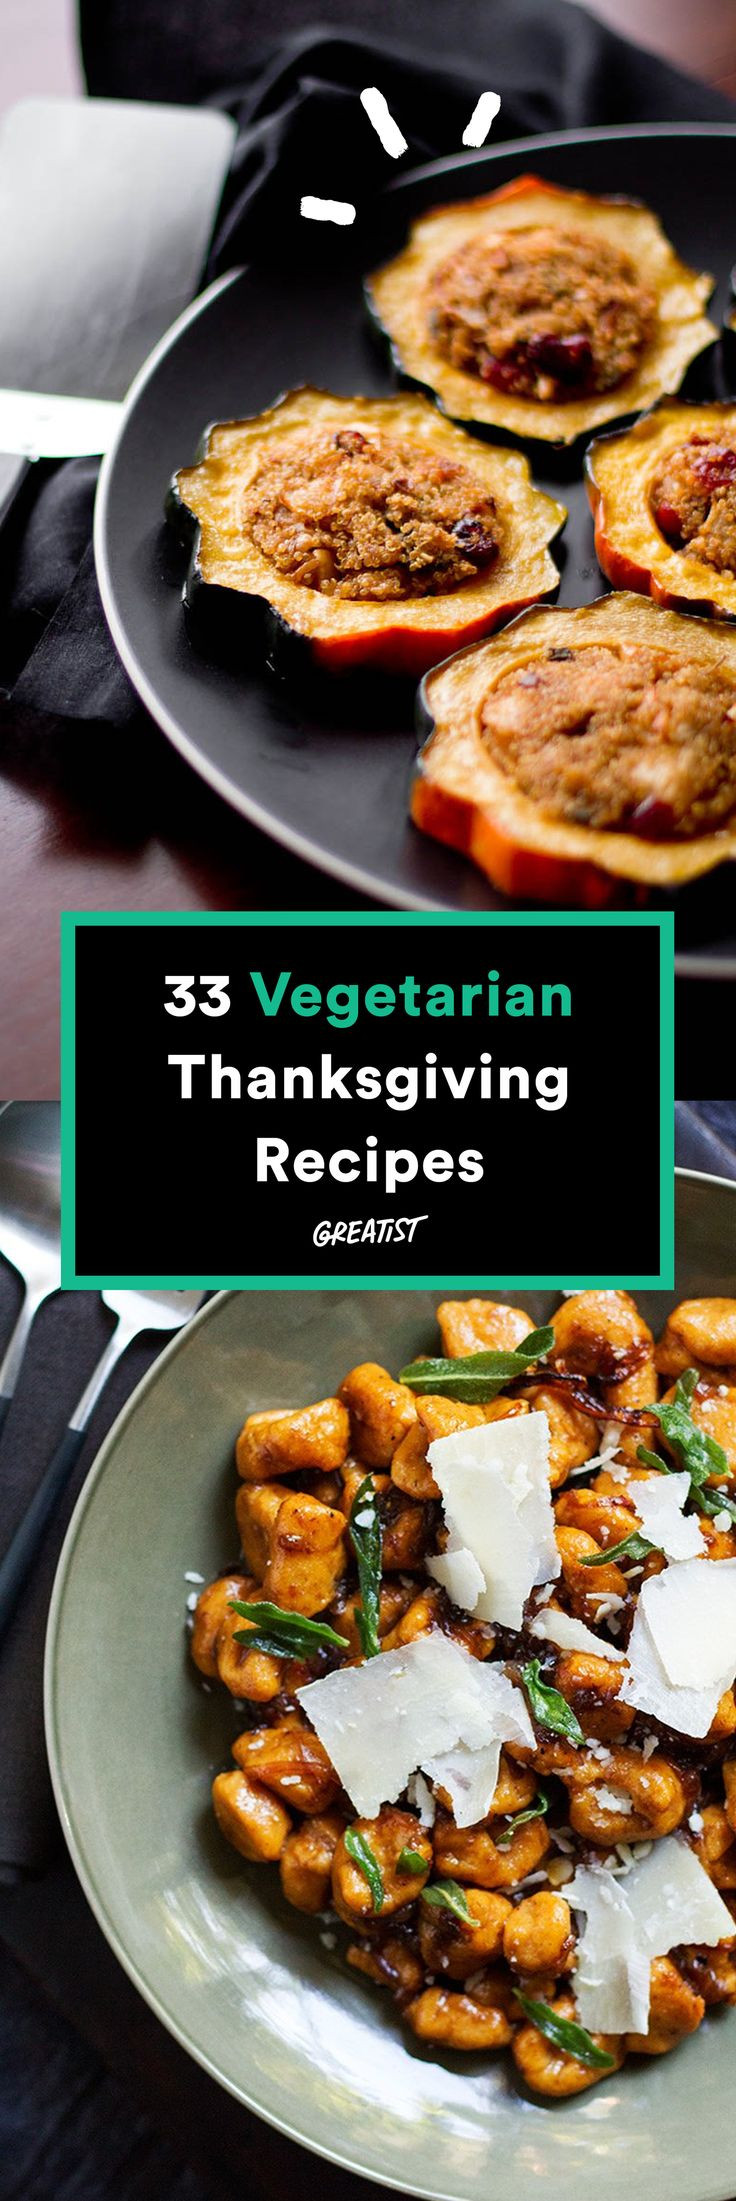 Thanksgiving Dinner Ideas Pinterest
 100 Thanksgiving dinner recipes on Pinterest